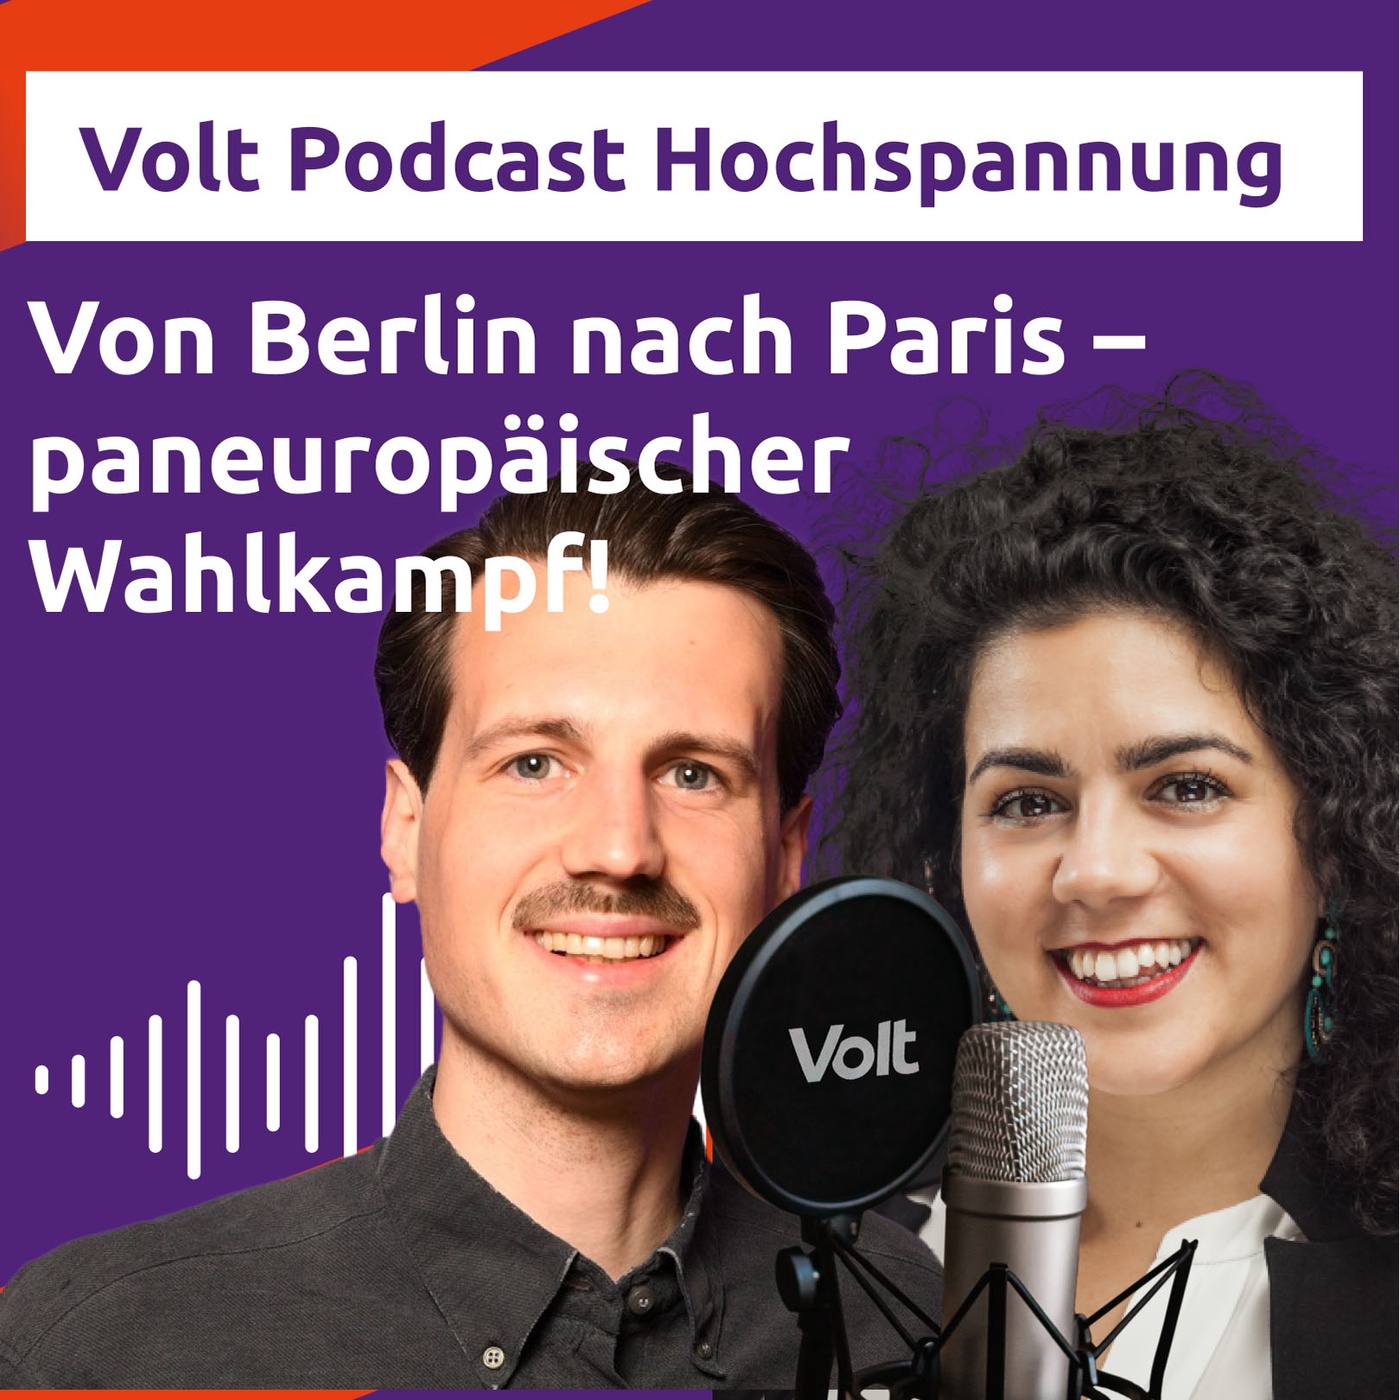 Von Berlin nach Paris - paneuropäischer Wahlkampf! - Hochspannung Podcast